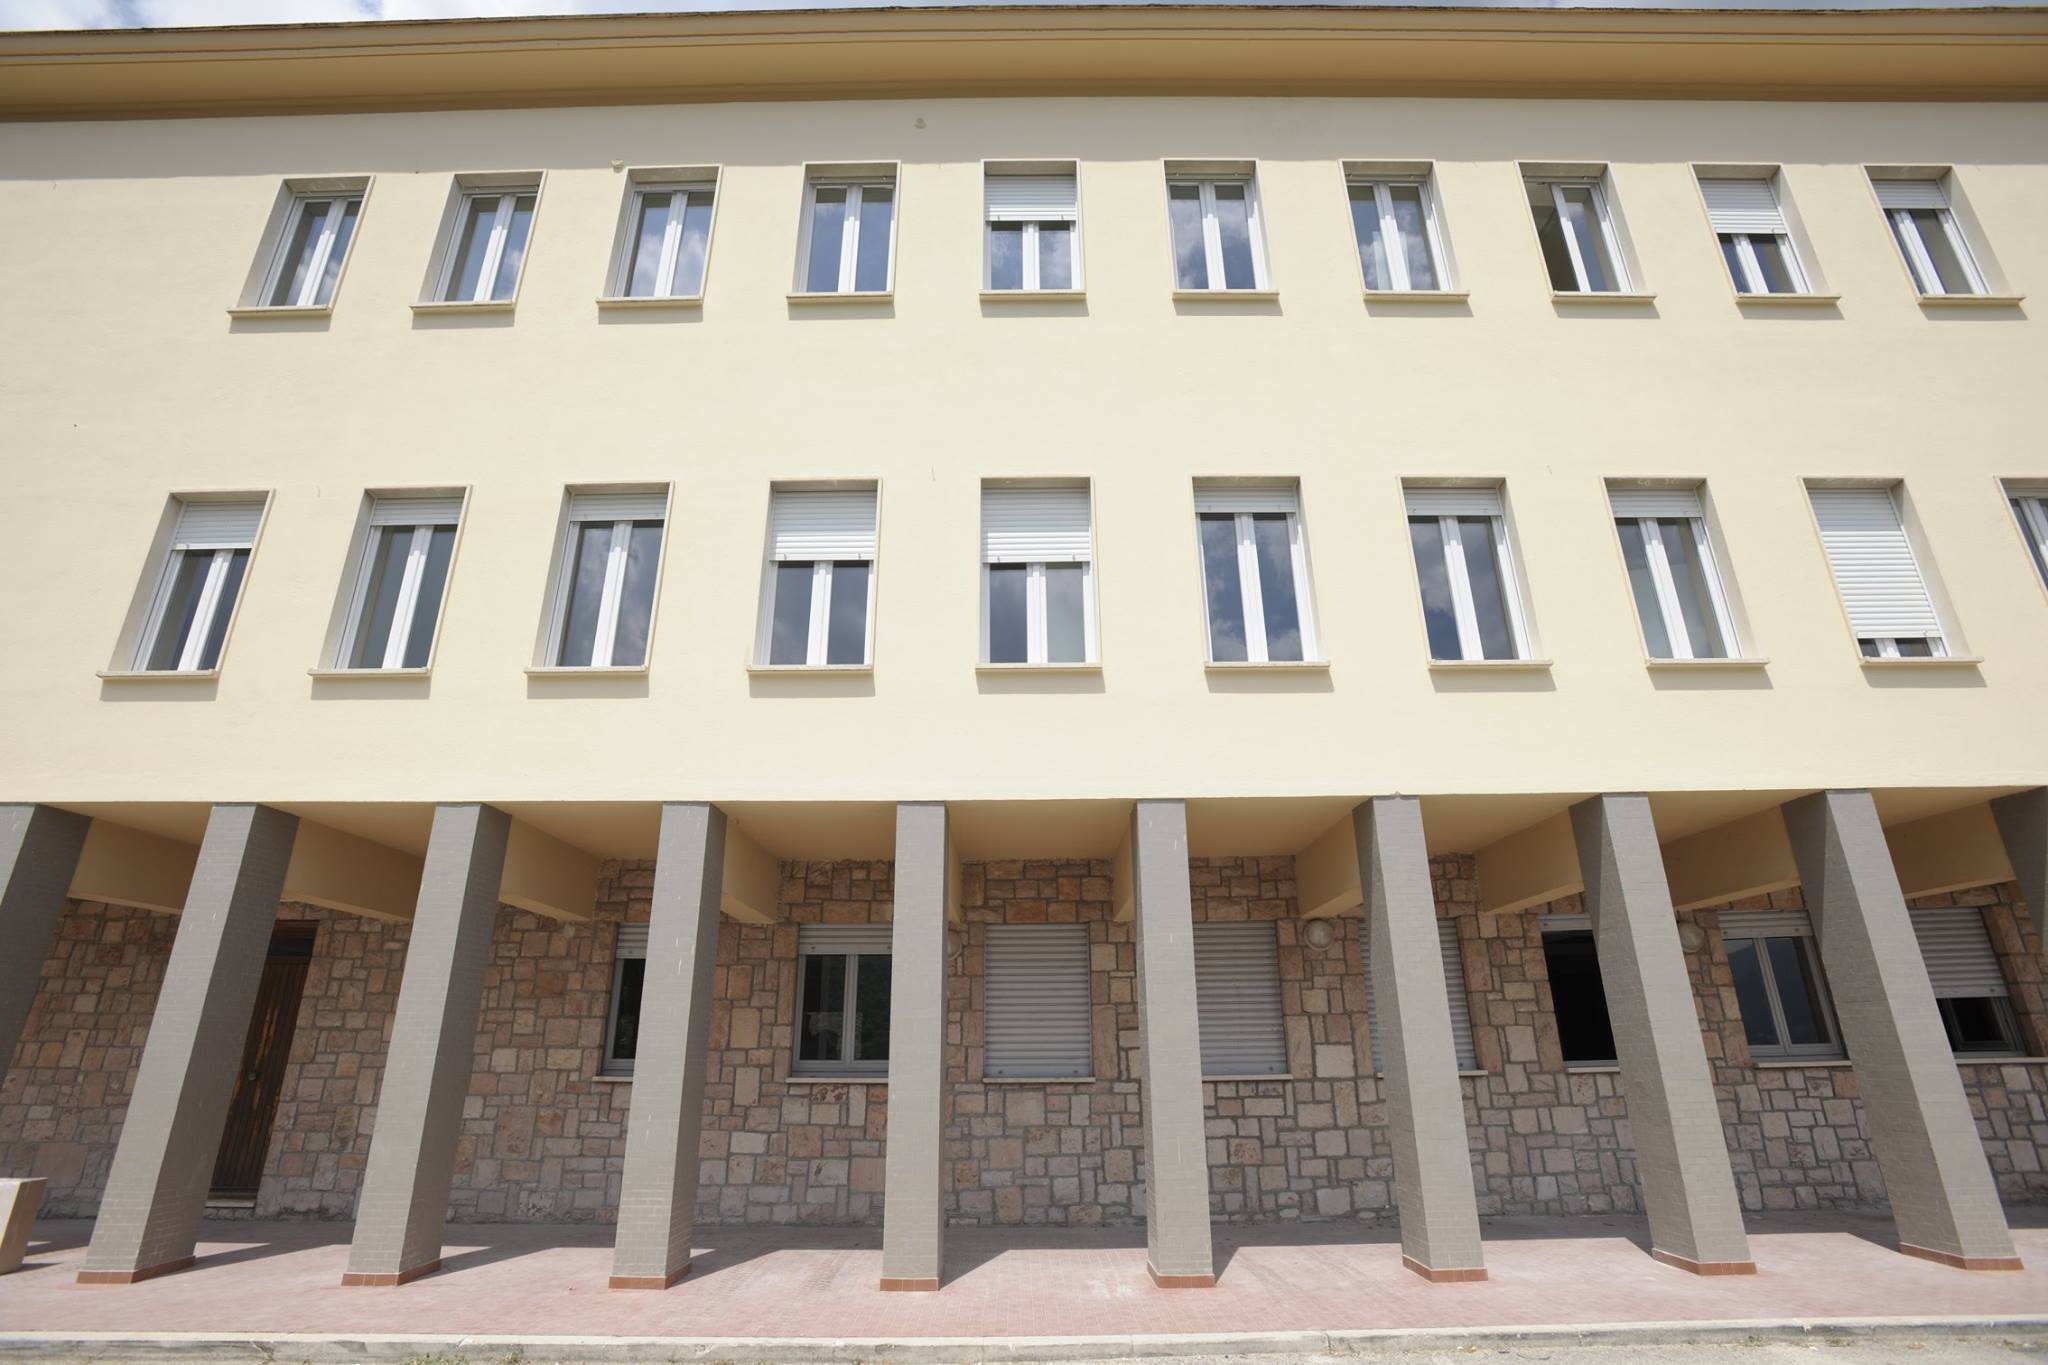 Nuova struttura Ospedaliera Cascia facciata